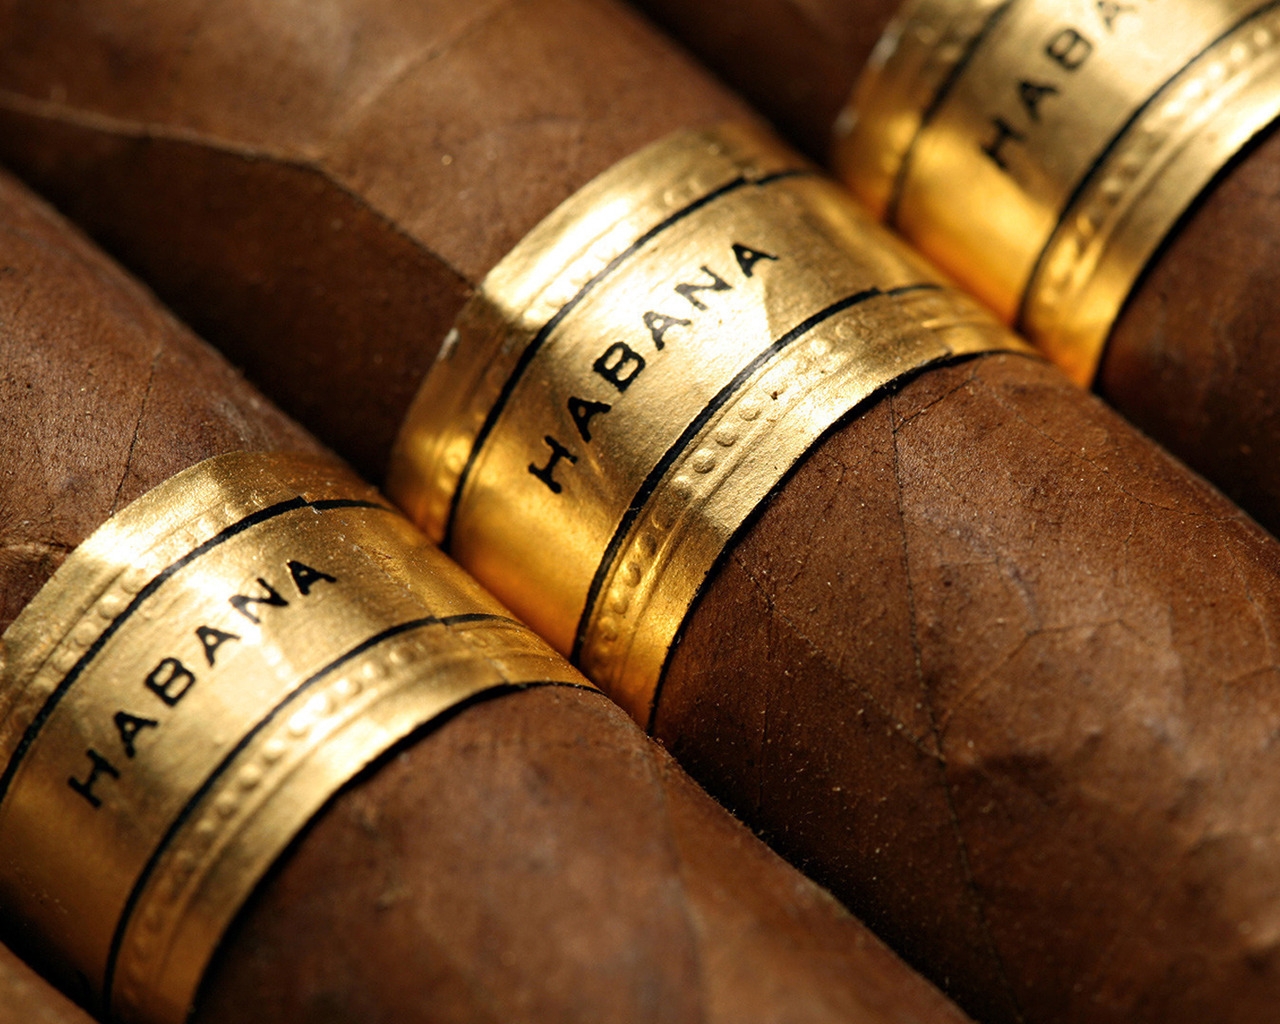 Habana Cigars for 1280 x 1024 resolution